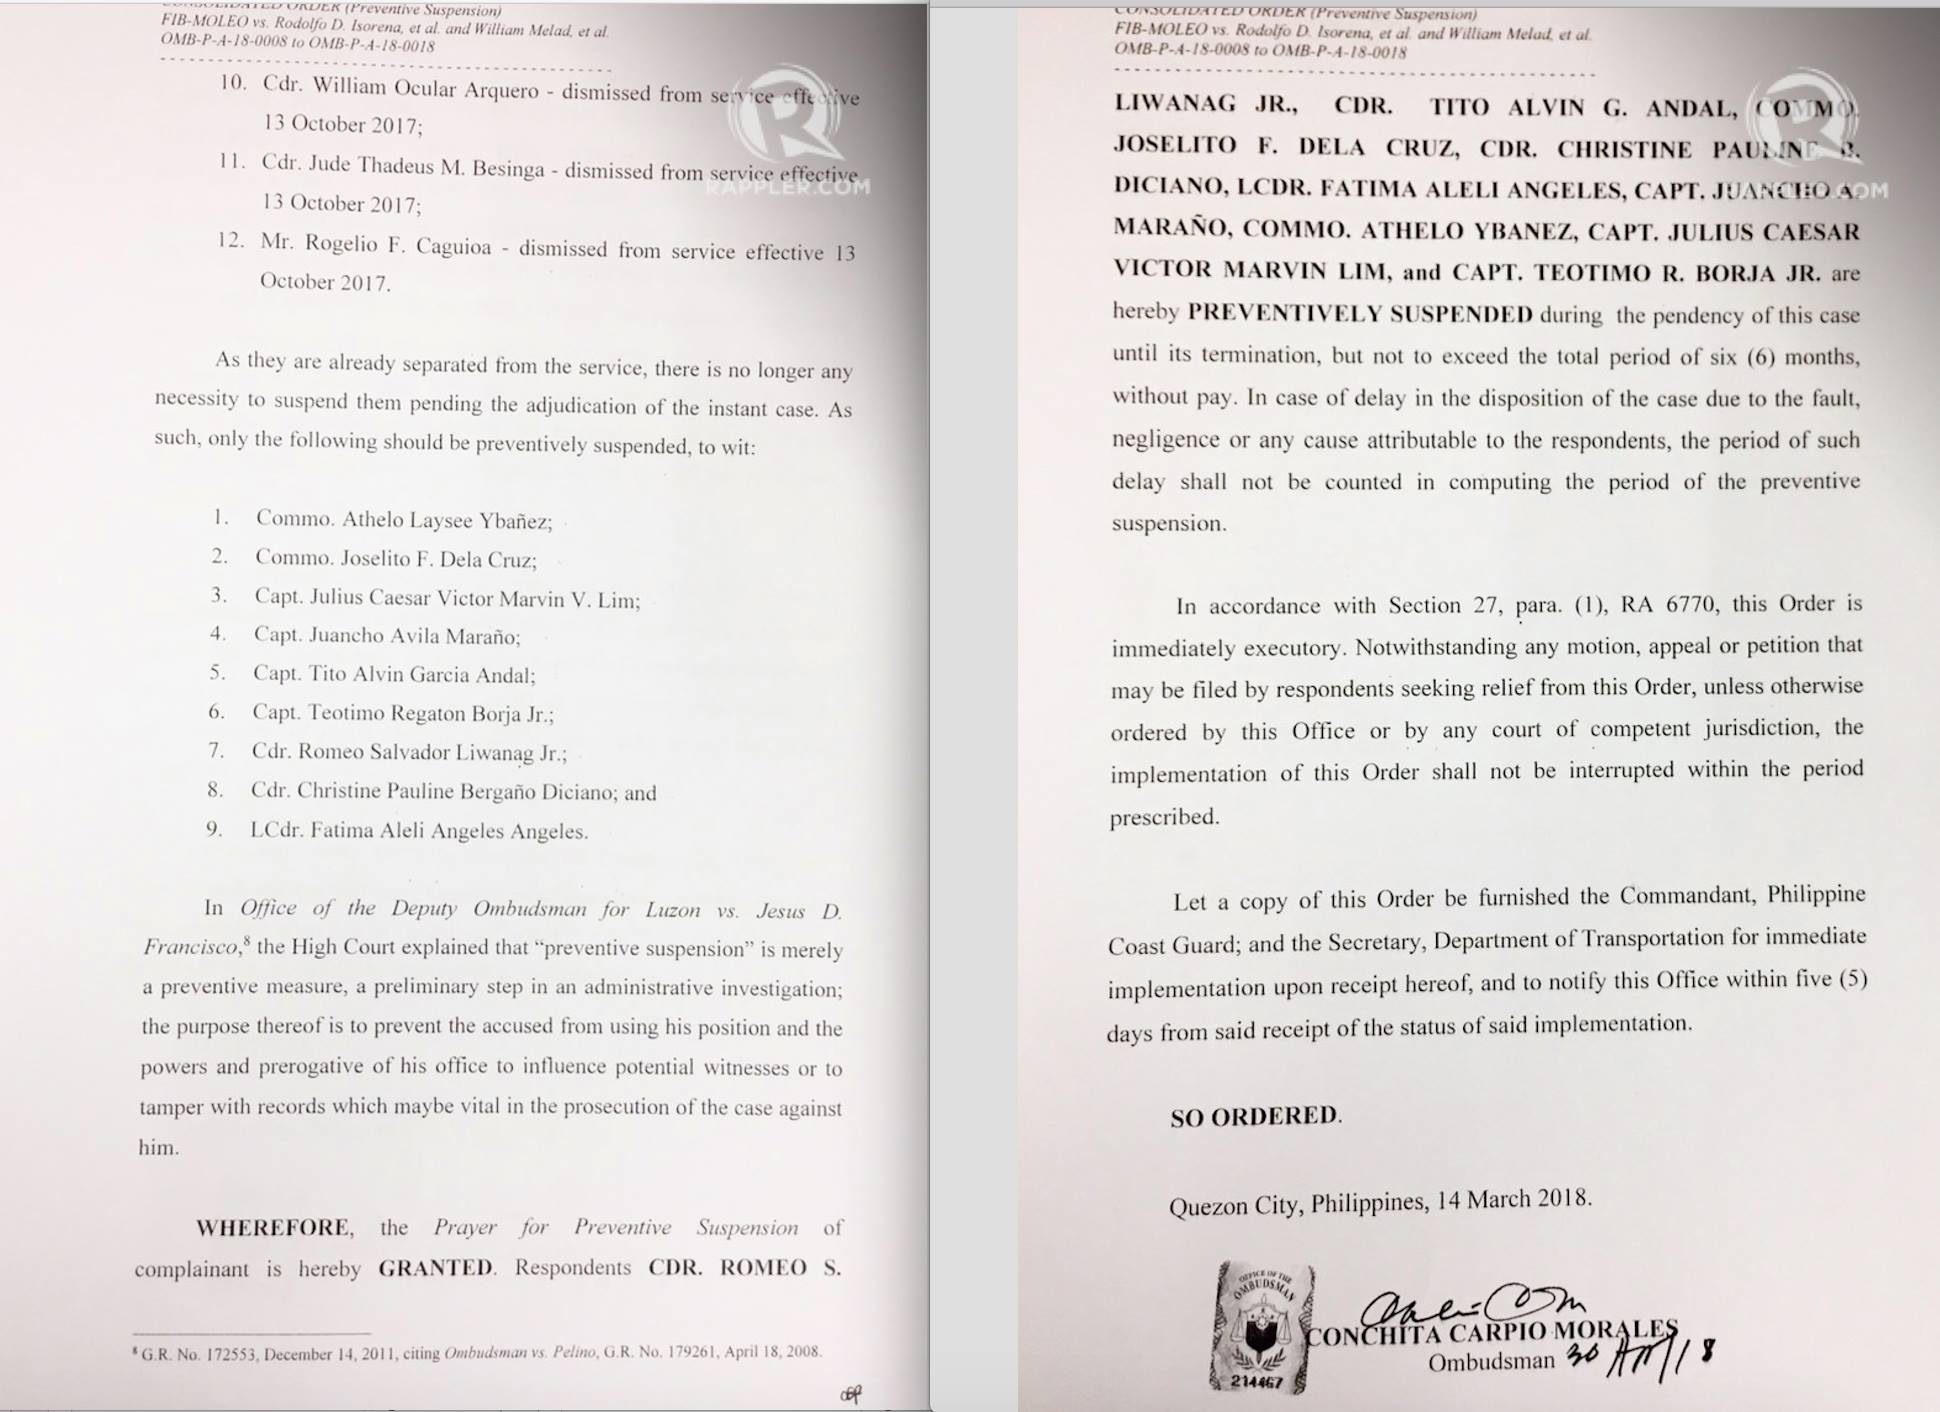 PREVENTIVE SUSPENSION. Ombudsman Conchita Carpio Morales metes out a preventive suspension against 9 Philippine Coast Guard officials. 